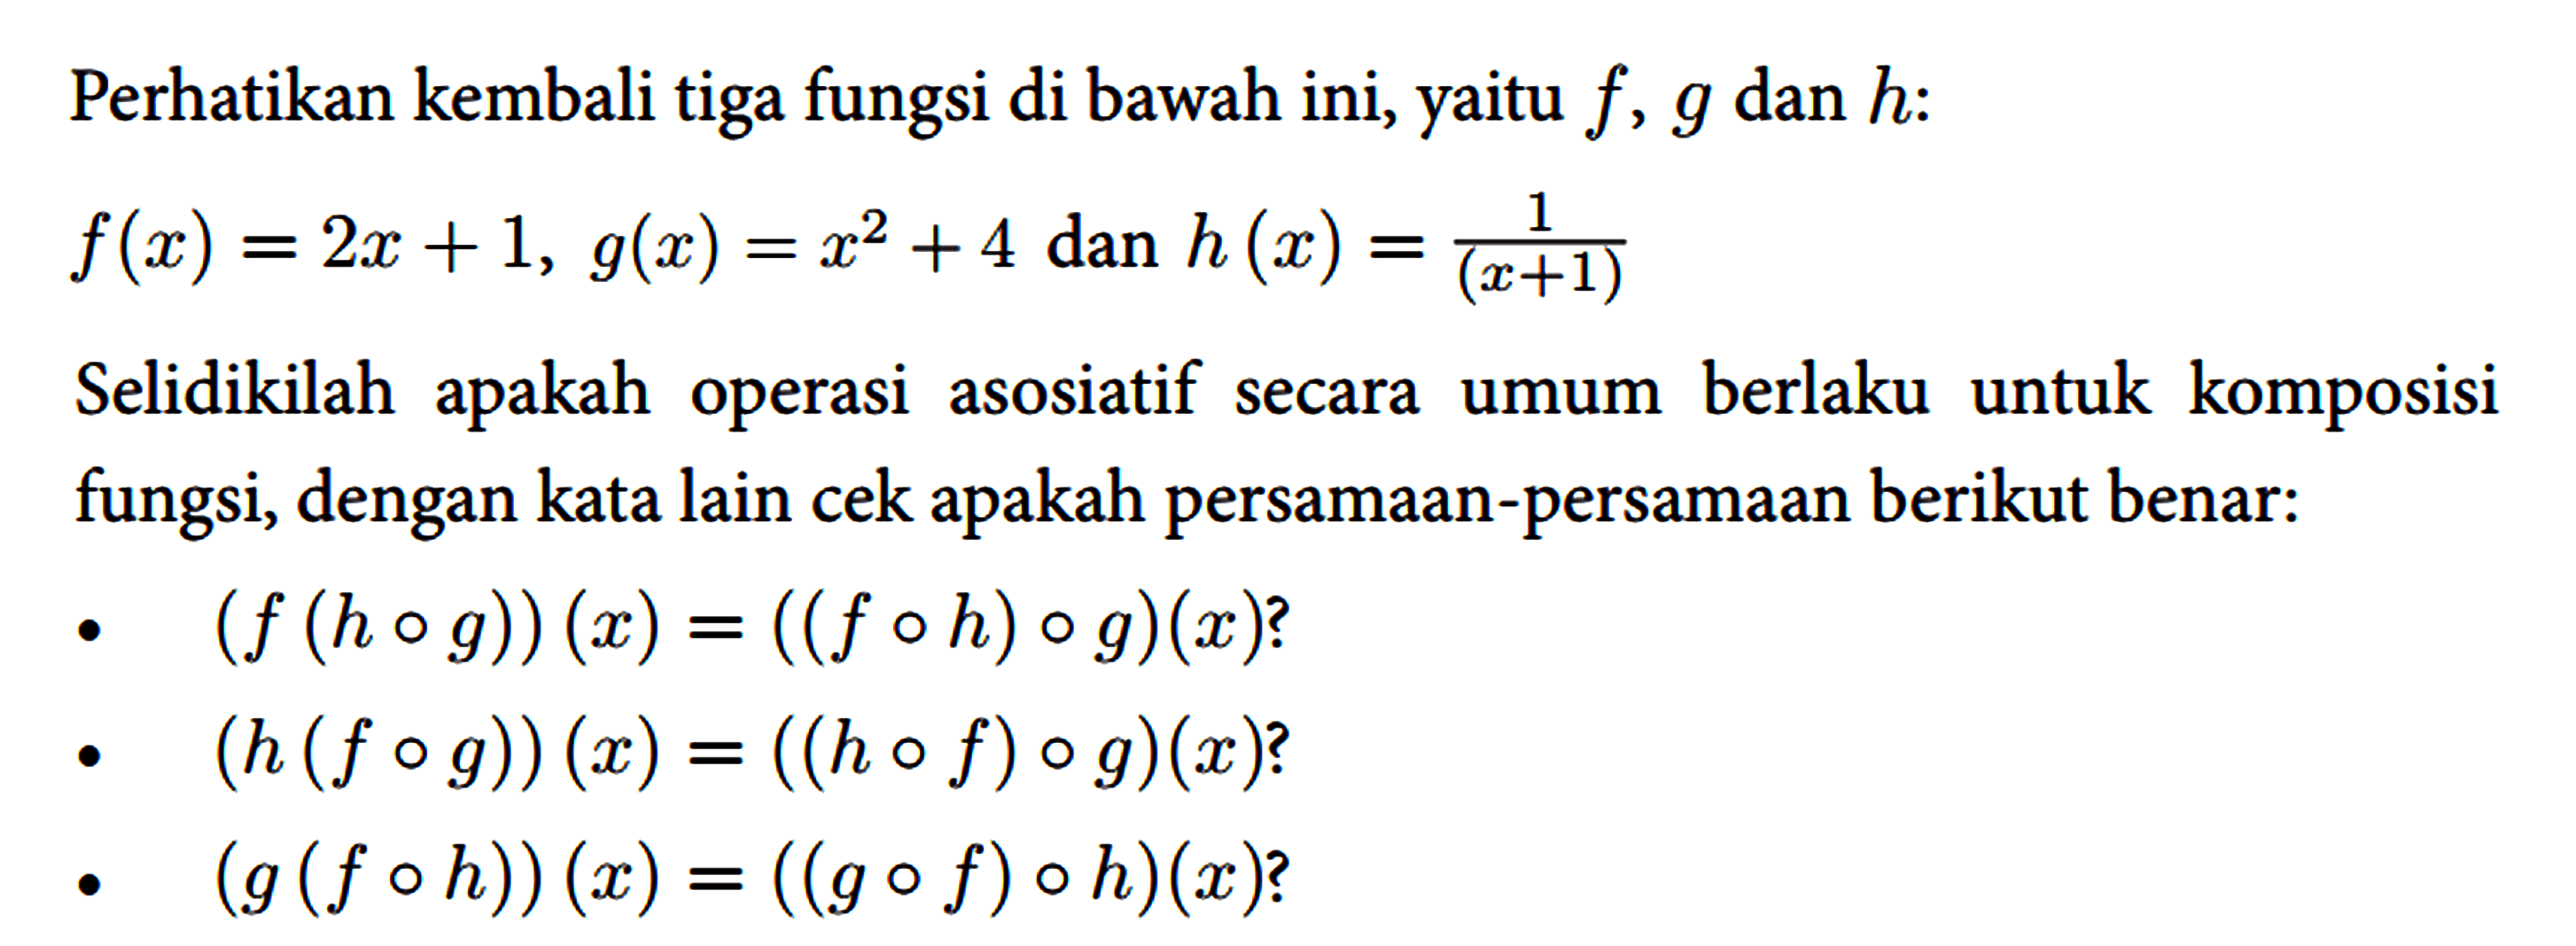 Perhatikan kembali tiga fungsi di bawah ini, yaitu f, g dan h :
 
 f(x)=2 x+1, g(x)=x^(2)+4 { dan ) h(x)=(1)/((x+1))
 
 Selidikilah apakah operasi asosiatif secara umum berlaku untuk komposisi fungsi, dengan kata lain cek apakah persamaan-persamaan berikut benar:
 - (f(h o g))(x)=((f o h) o g)(x) ? 
 - (h(f o g))(x)=((h o f) o g)(x) ?
 - (g(f o h))(x)=((g o f) o h)(x) ?